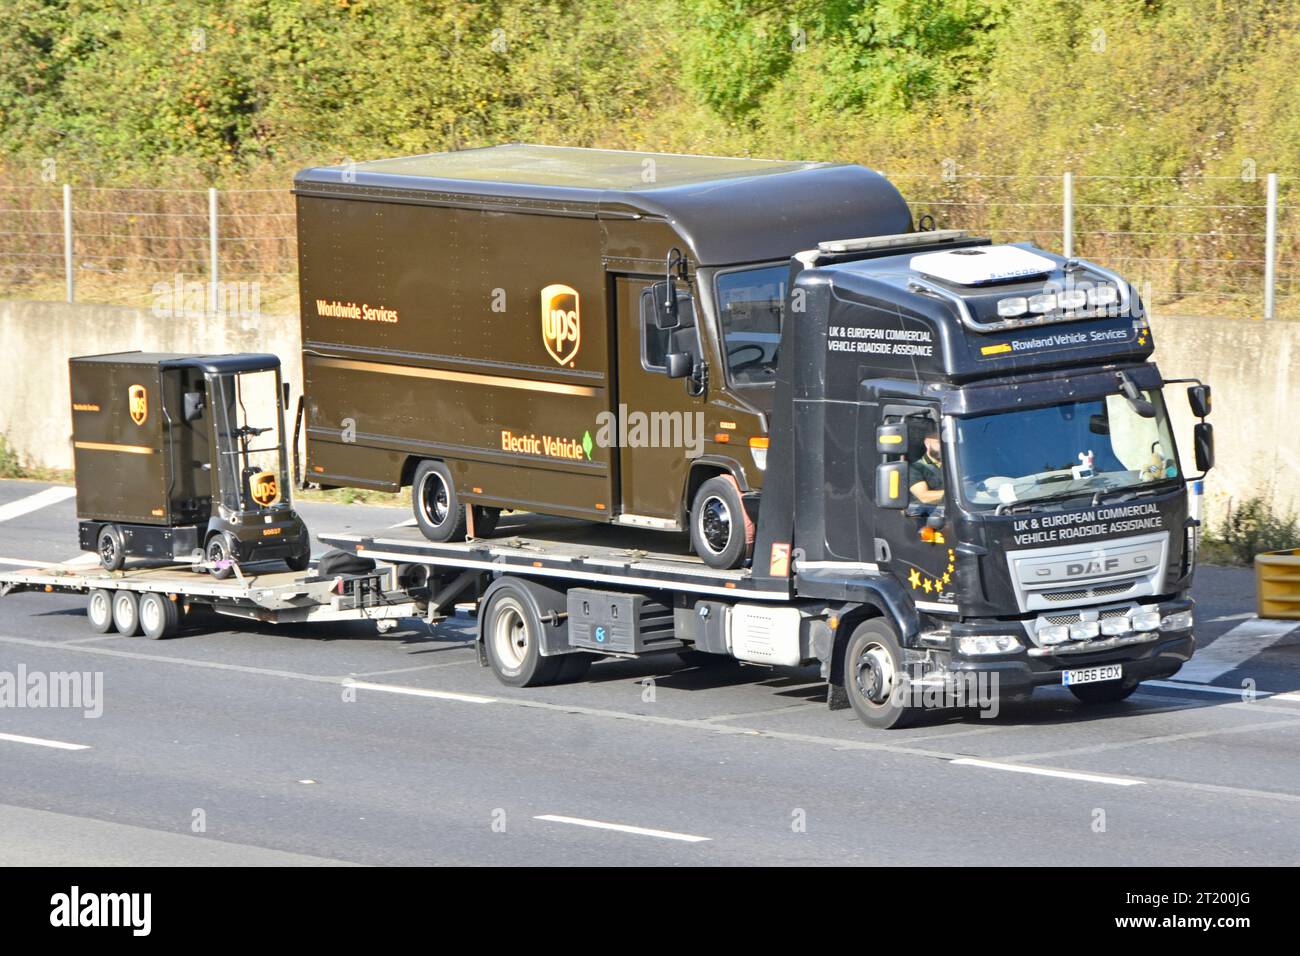 Camion di recupero con piattaforma piatta DAF caricato UPS rimorchio per il traino di furgoni pacchi elettrici che trasporta un carrello di carico UPS in miniatura su M25 Road Inghilterra Regno Unito Foto Stock